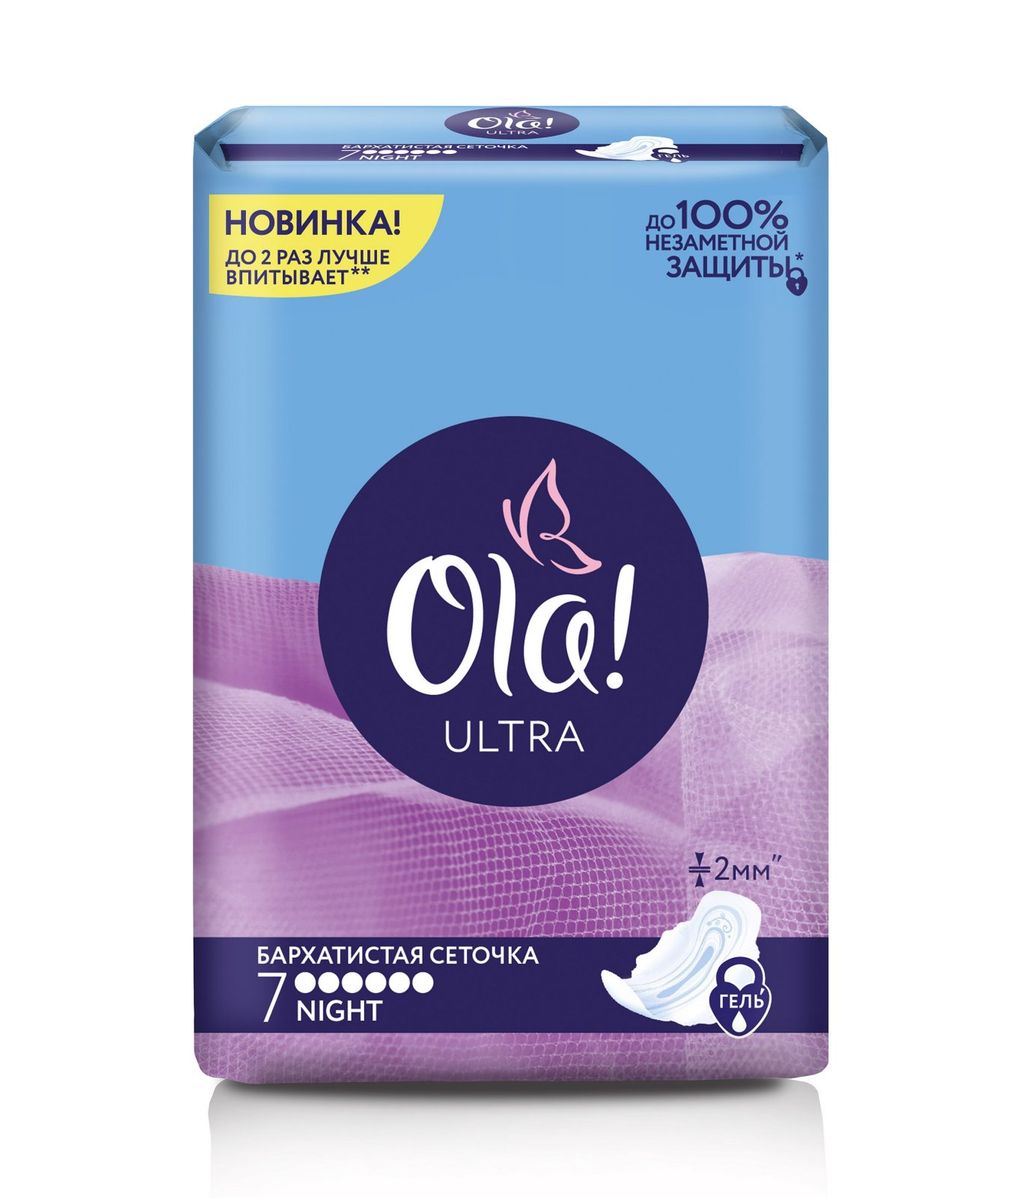 Ola! Ultra Night прокладки Бархатистая сеточка, прокладки гигиенические, ультратонкие, 7 шт.